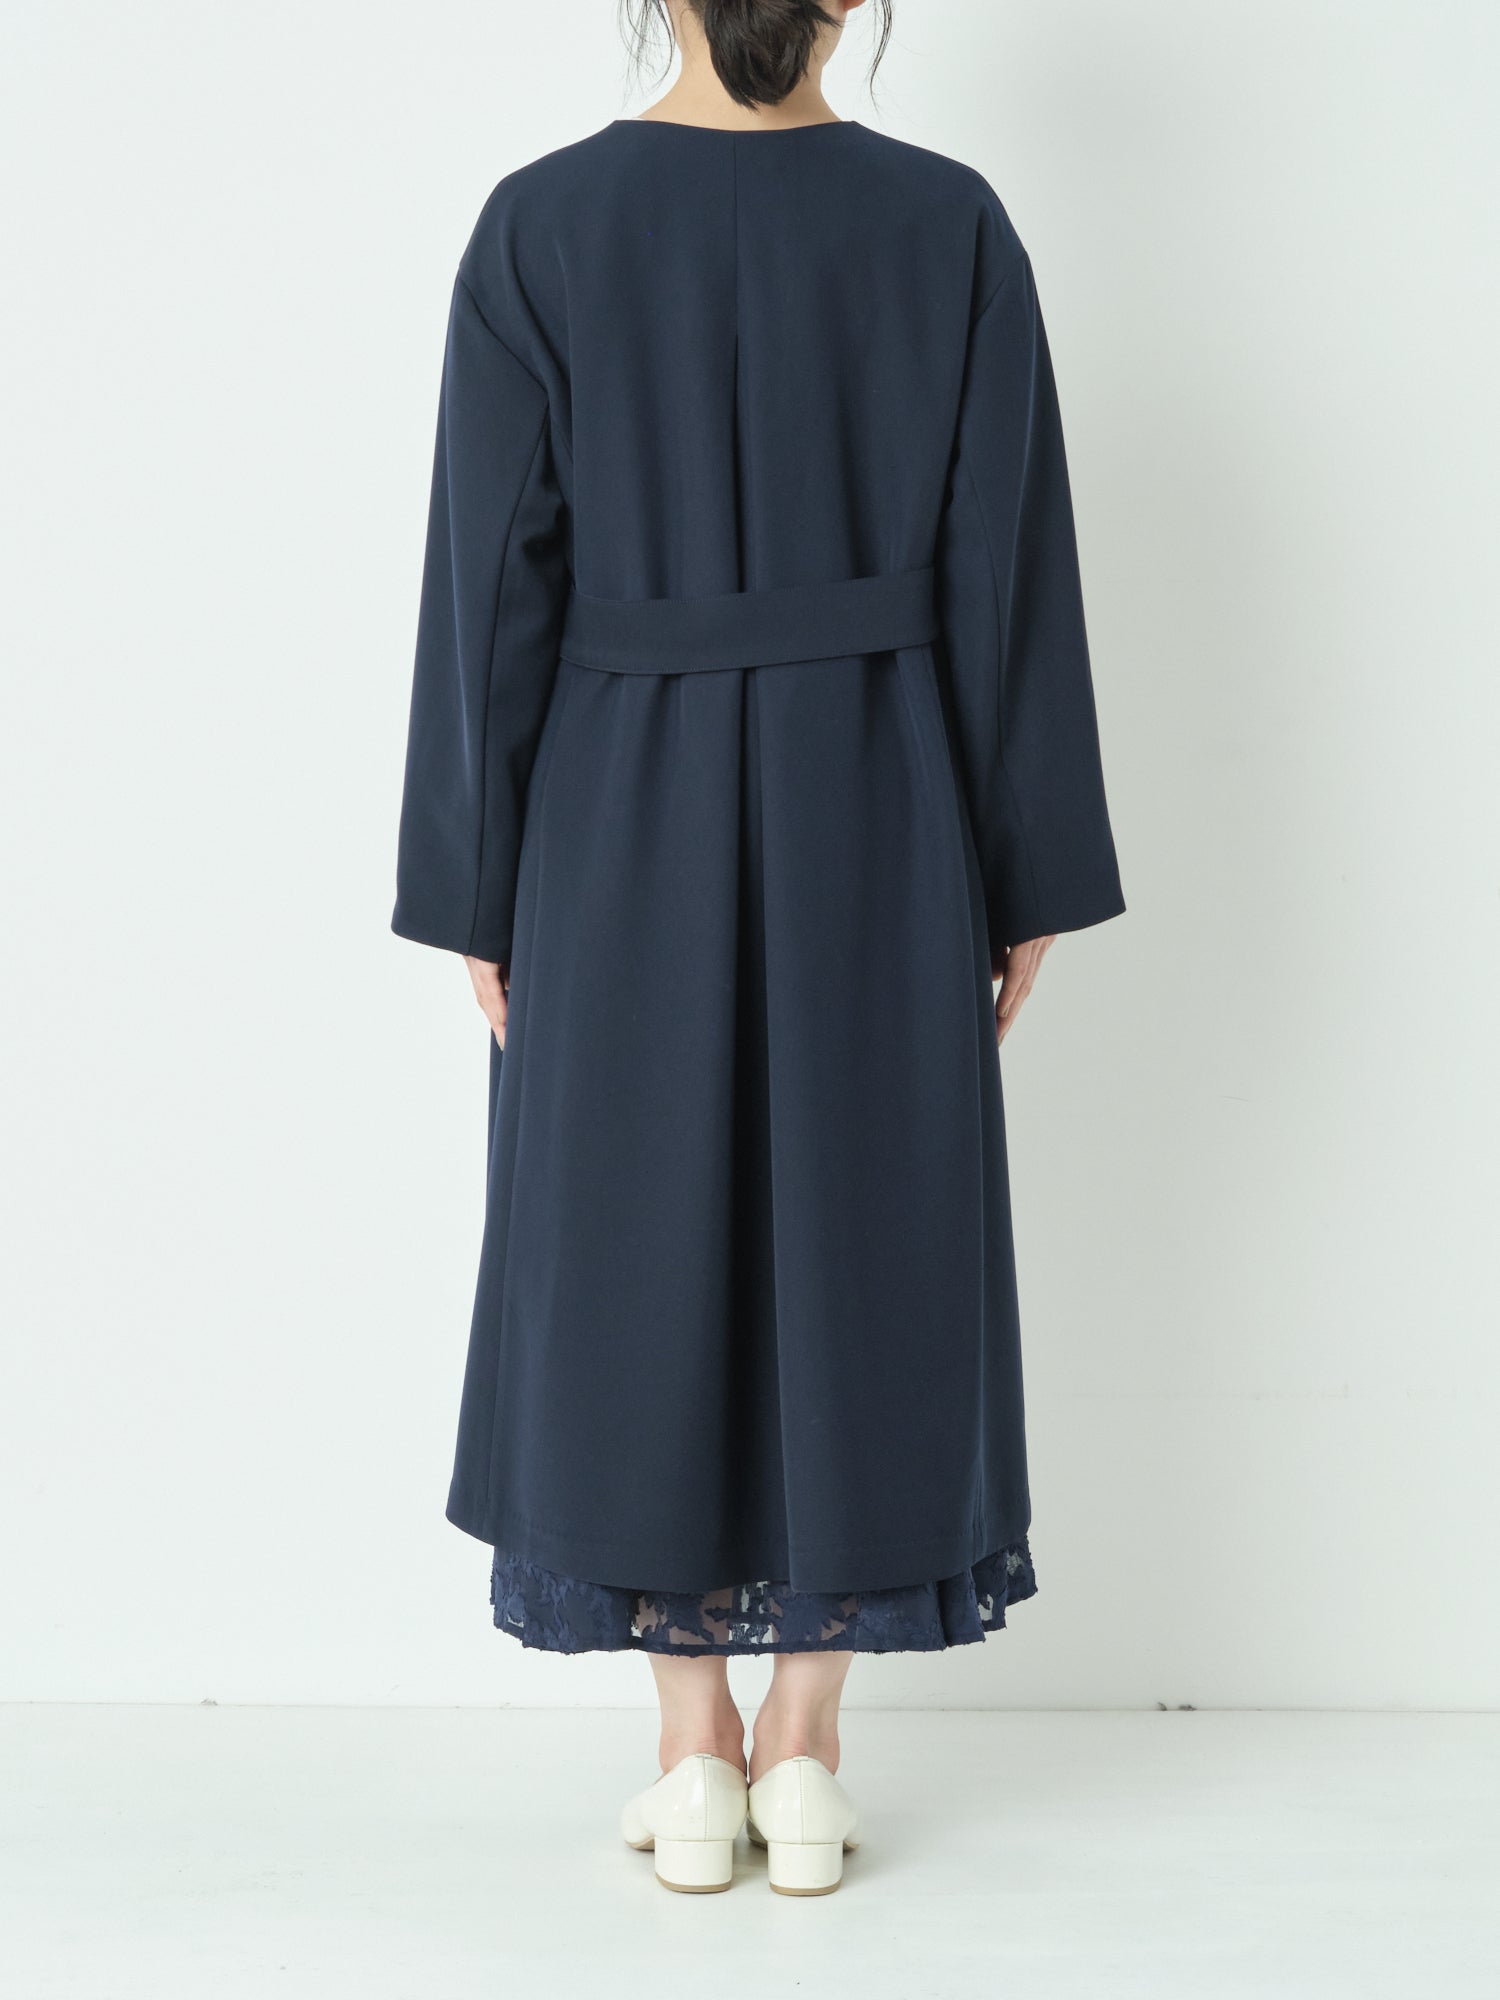 キーネックバックタックコート｜ 小柄・低身長女性向けファッション 